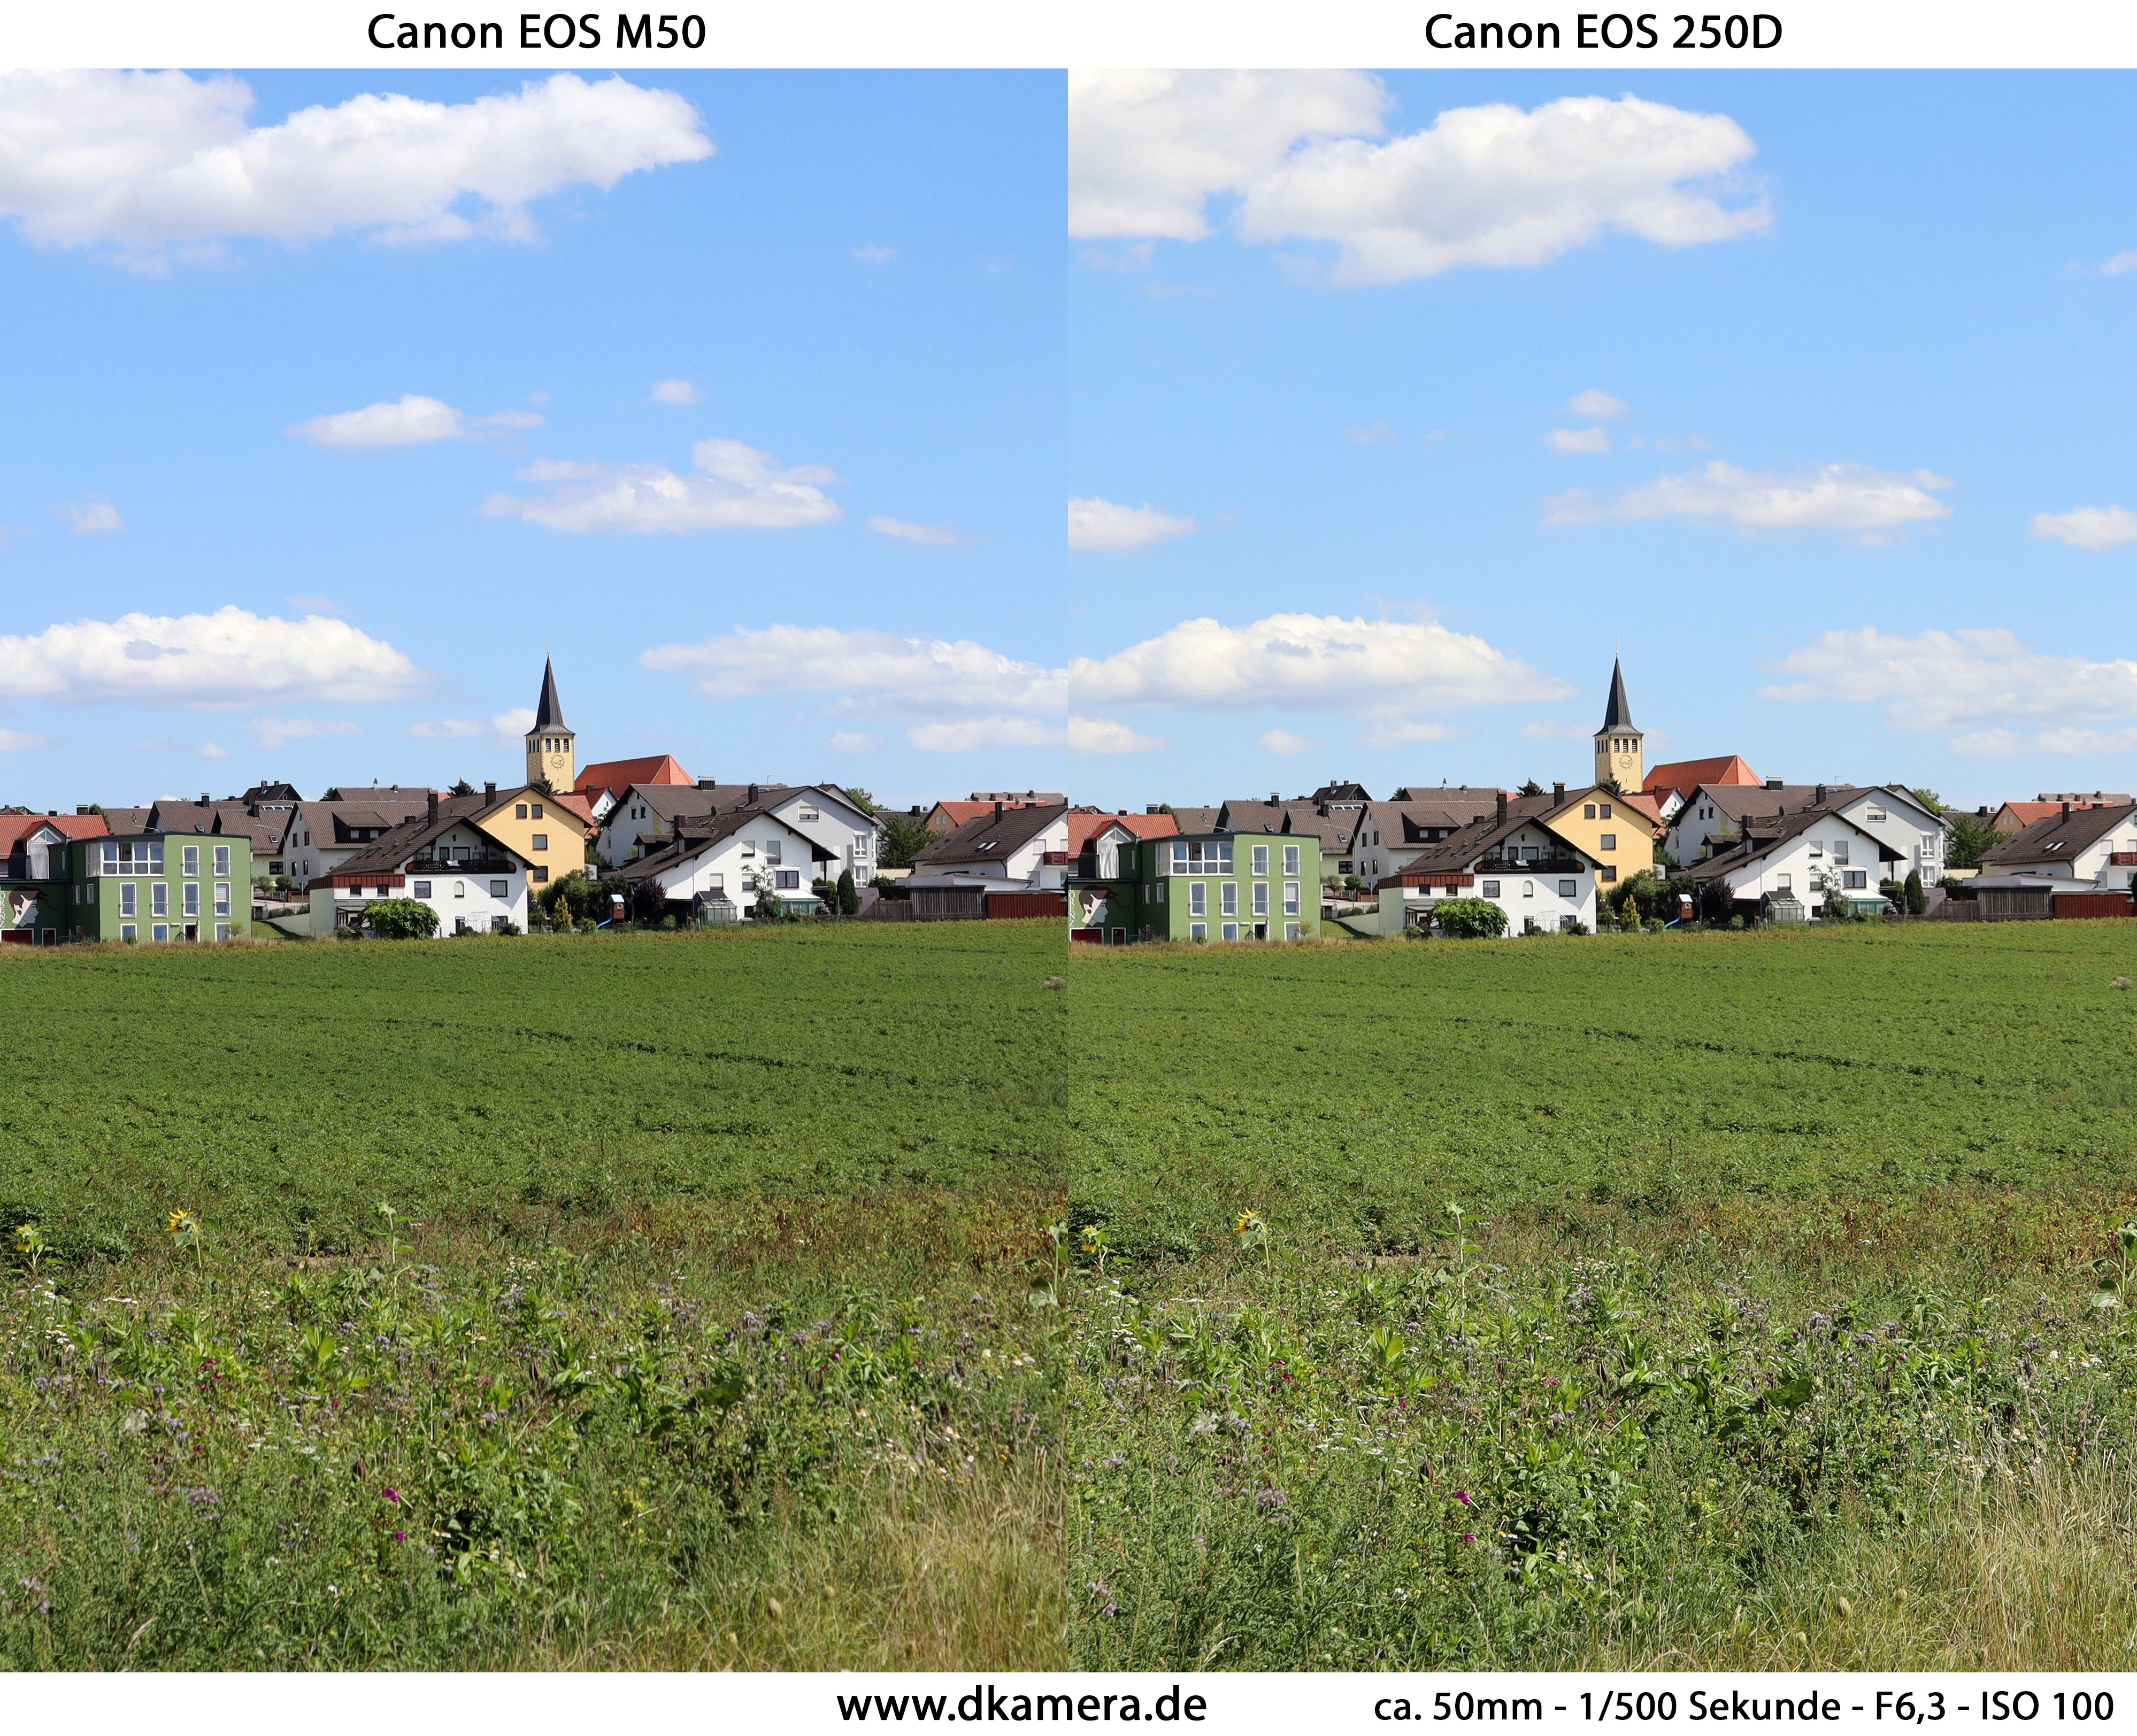 animation sælger kubiske Canon EOS M50 und EOS 250D im Duell (Teil 1) | News | dkamera.de | Das  Digitalkamera-Magazin